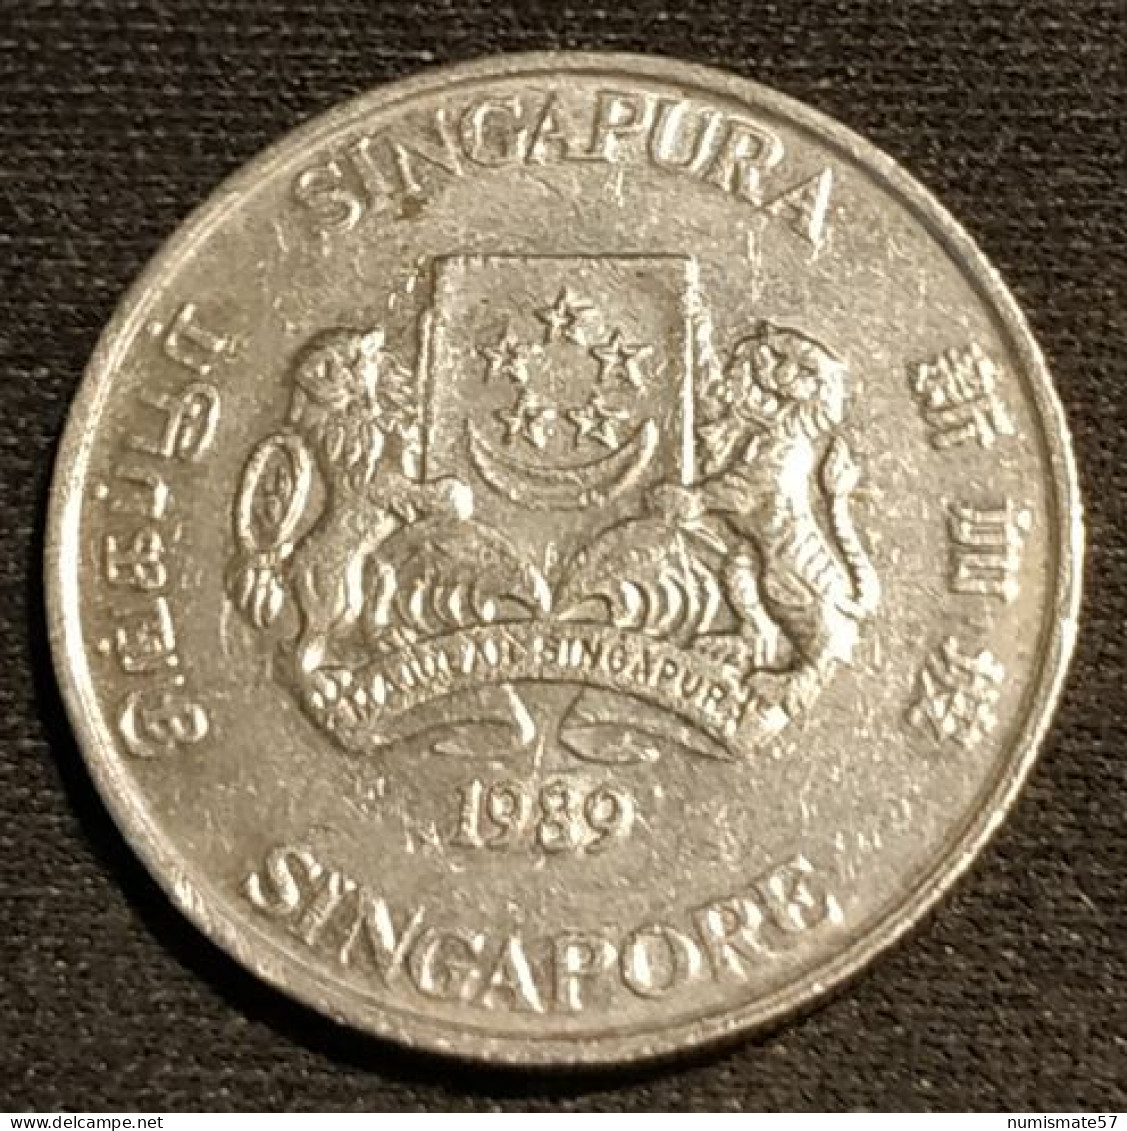 SINGAPOUR - SINGAPORE - 20 CENTS 1989 - KM 52 - ( Blason Haut ) - Singapour